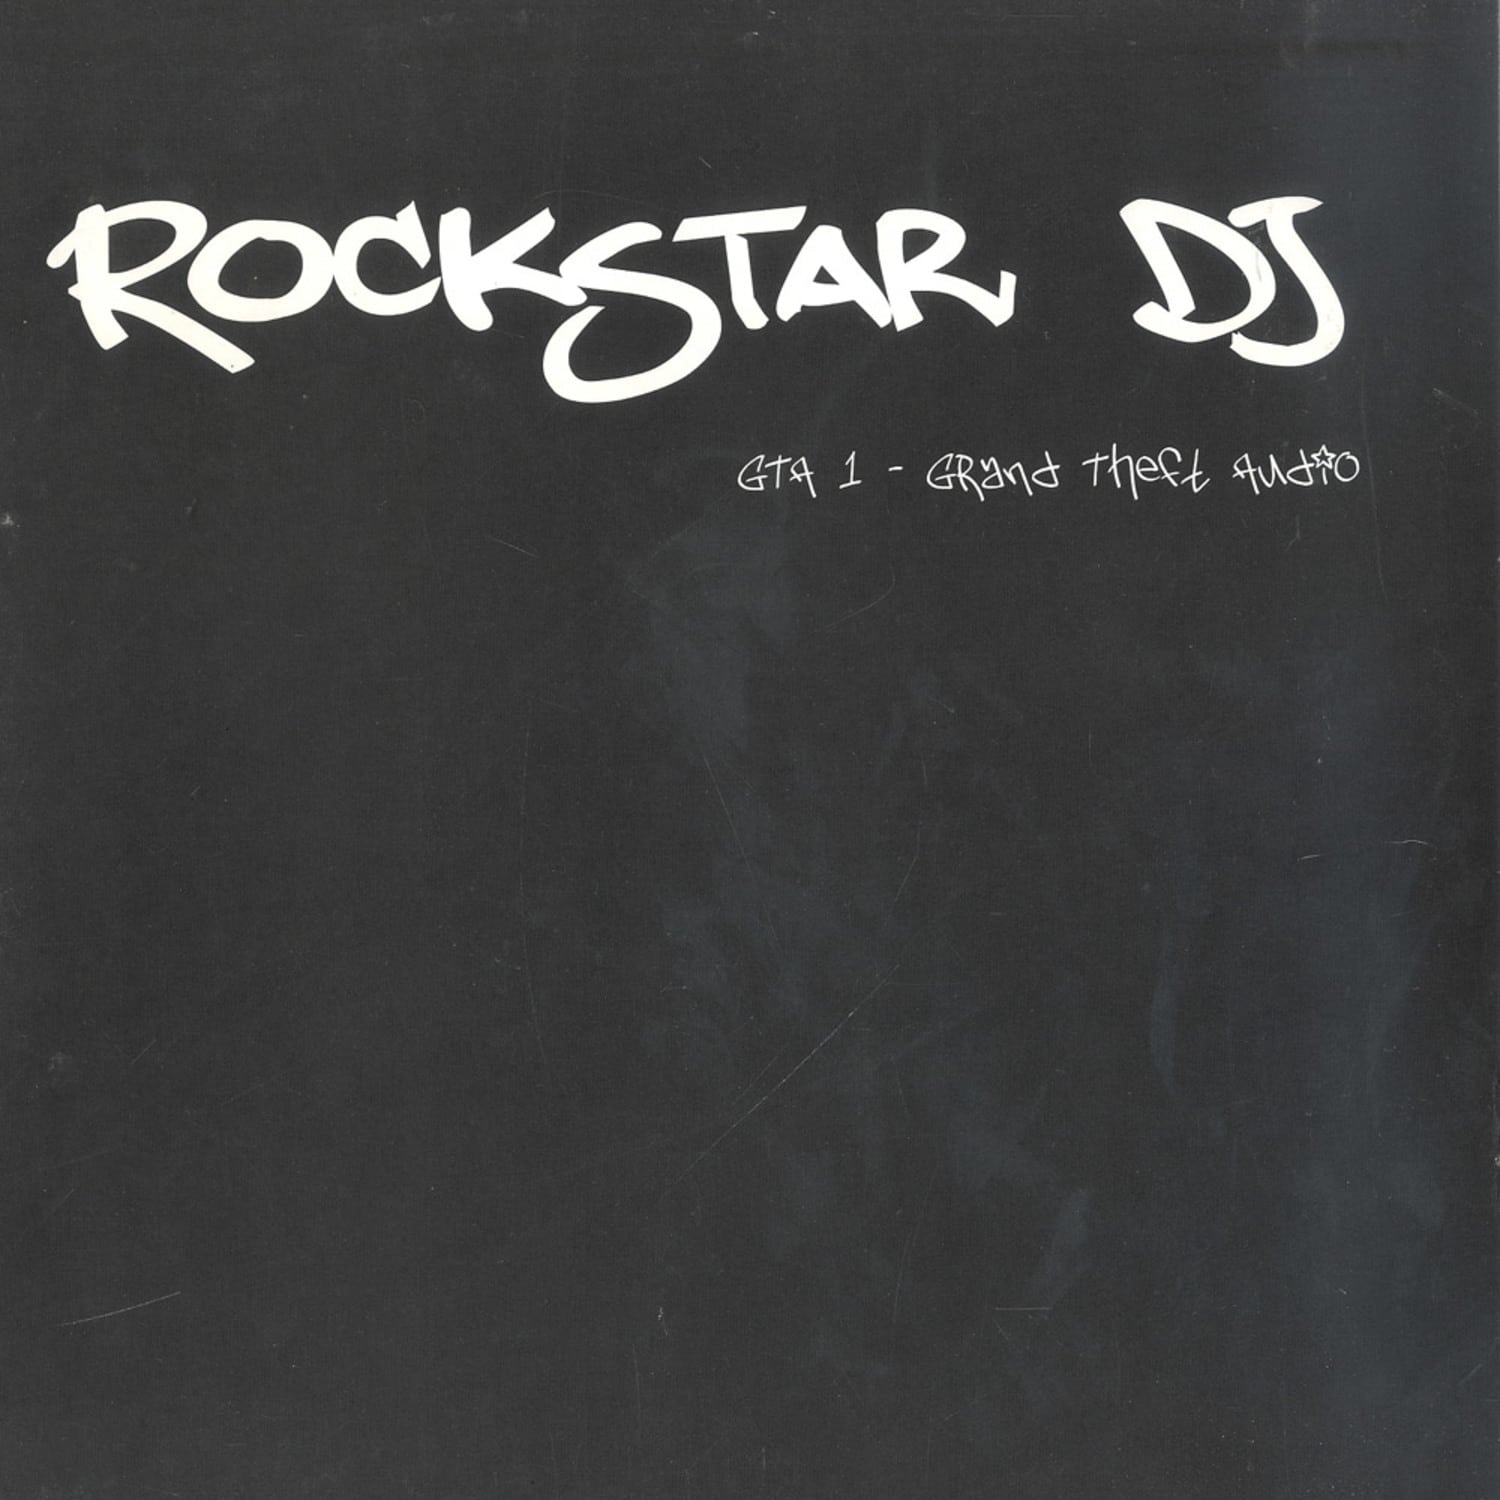 Rockstar DJs - GTA 1